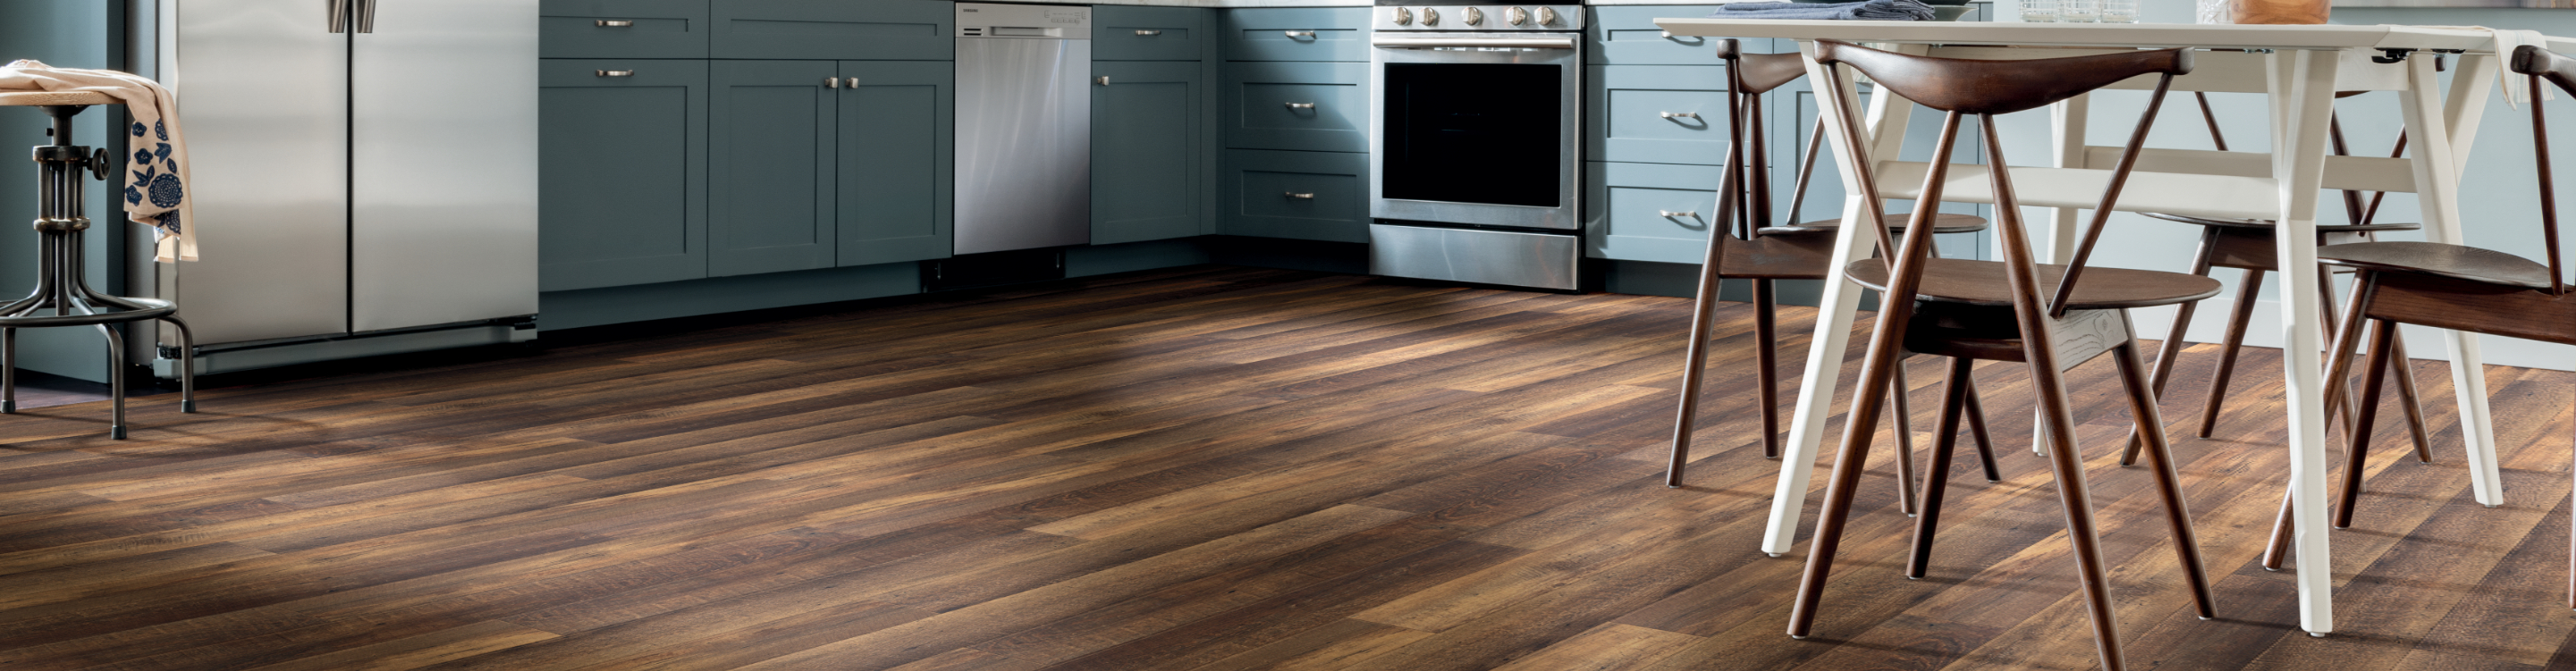 Dark wood look vinyl plank floor in casual kitchen 